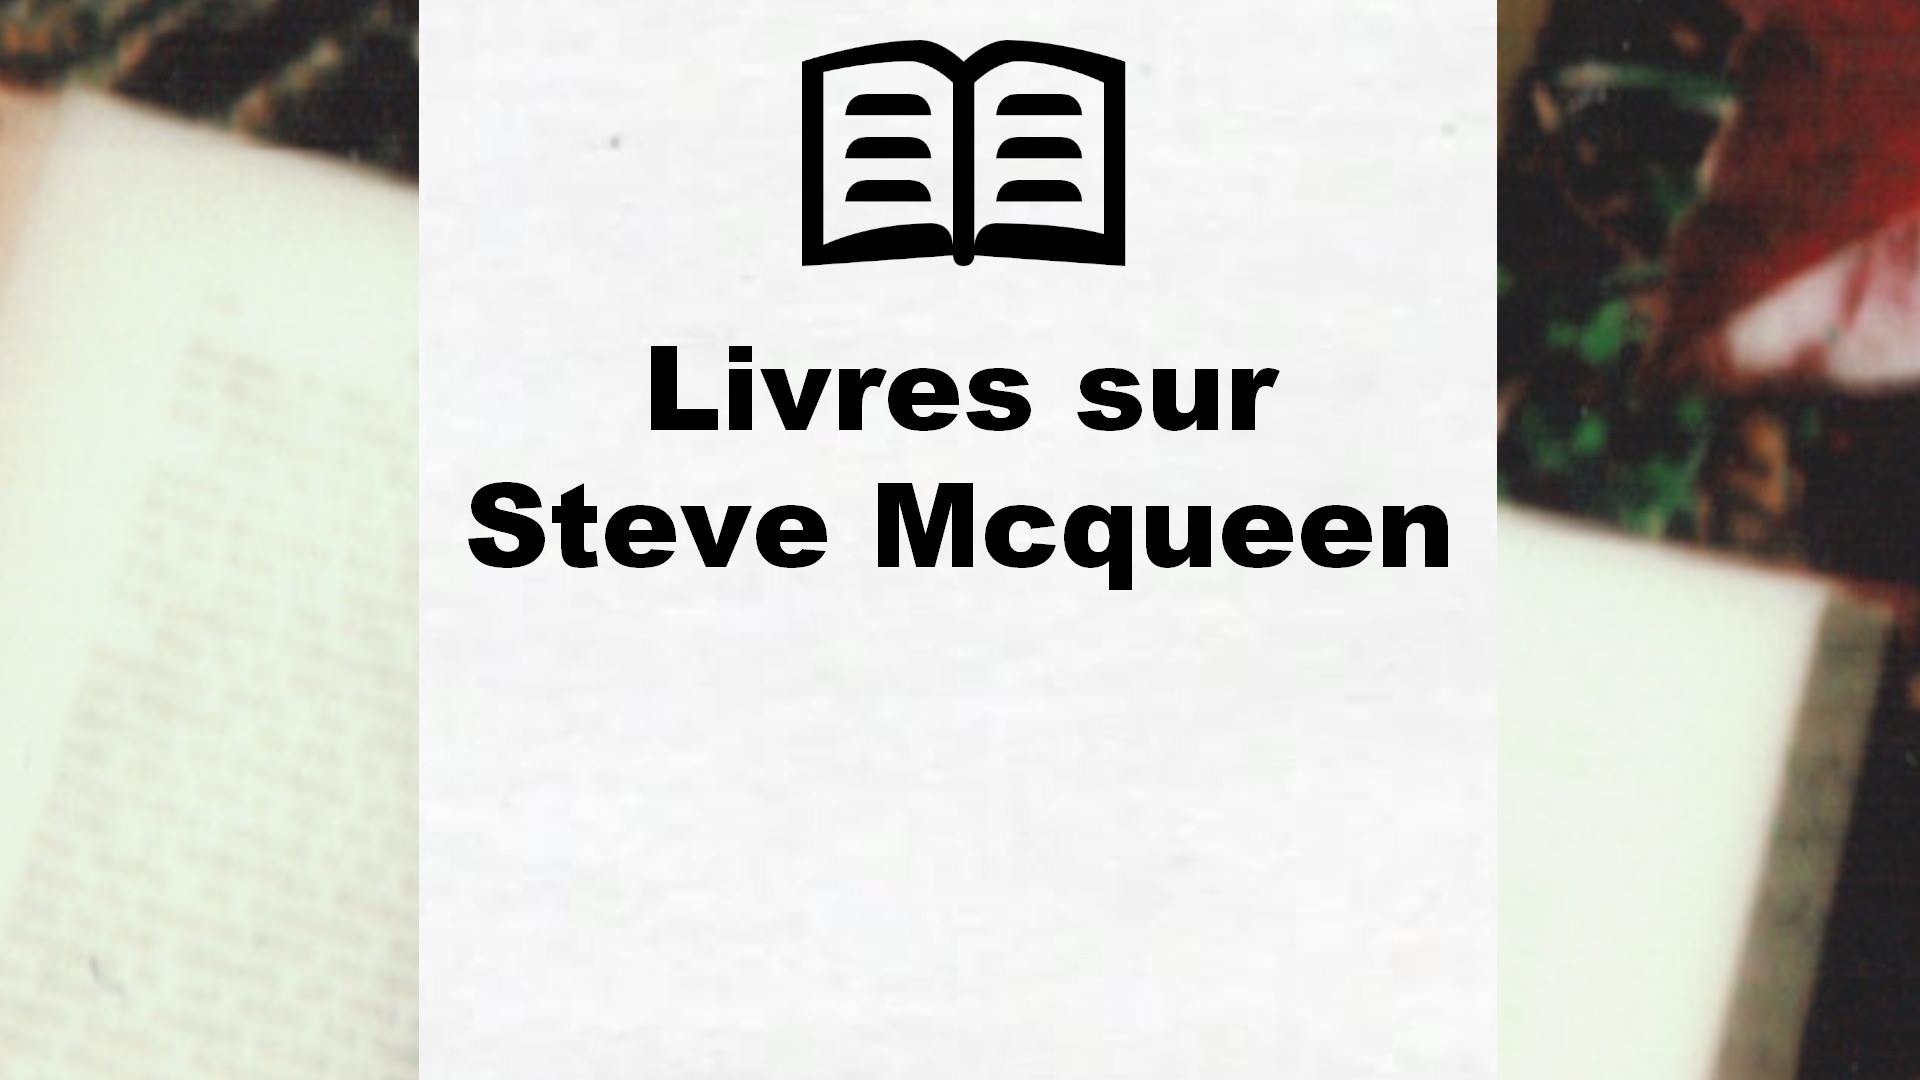 Livres sur Steve Mcqueen